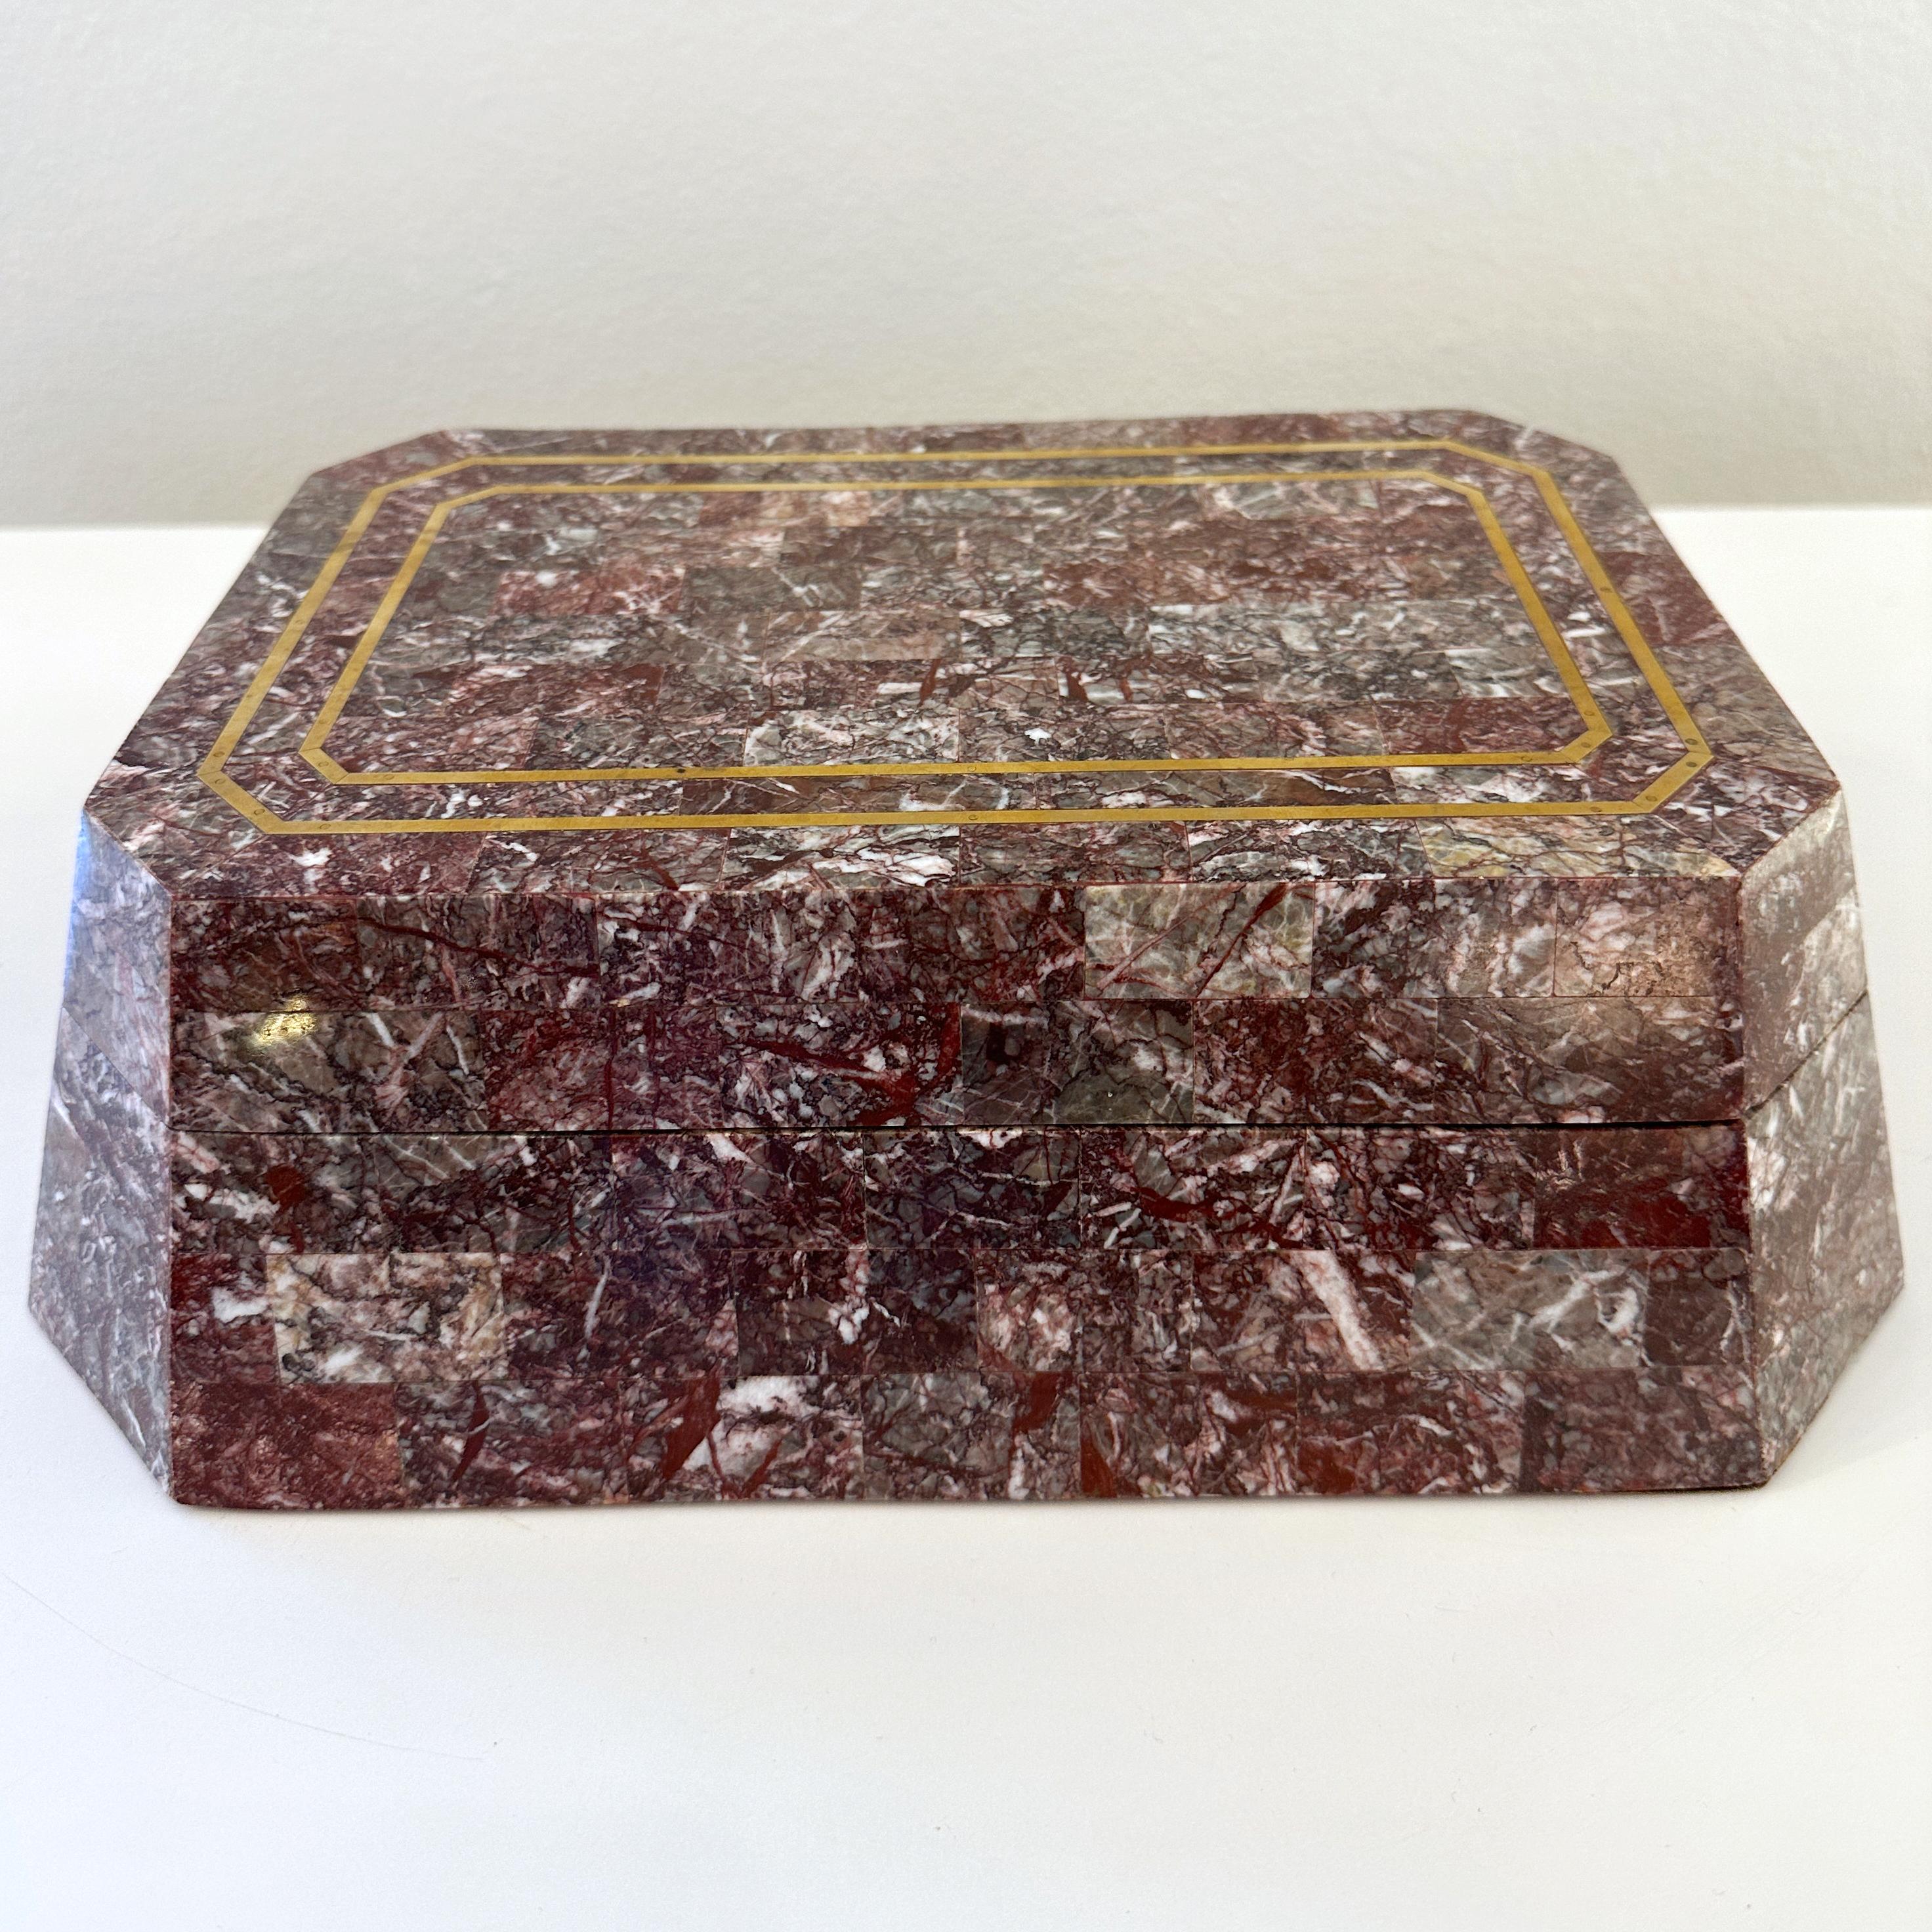 Exquisite Maitland Smith Tessellated Rosso Levanto Marmor Box, ca 1990er Jahre. 

Dieses achteckige, schräge Kästchen ist mit einem schönen Mosaik aus rosso levanto-Marmor verkleidet und mit einer Messingintarsie auf der Oberseite des Deckels